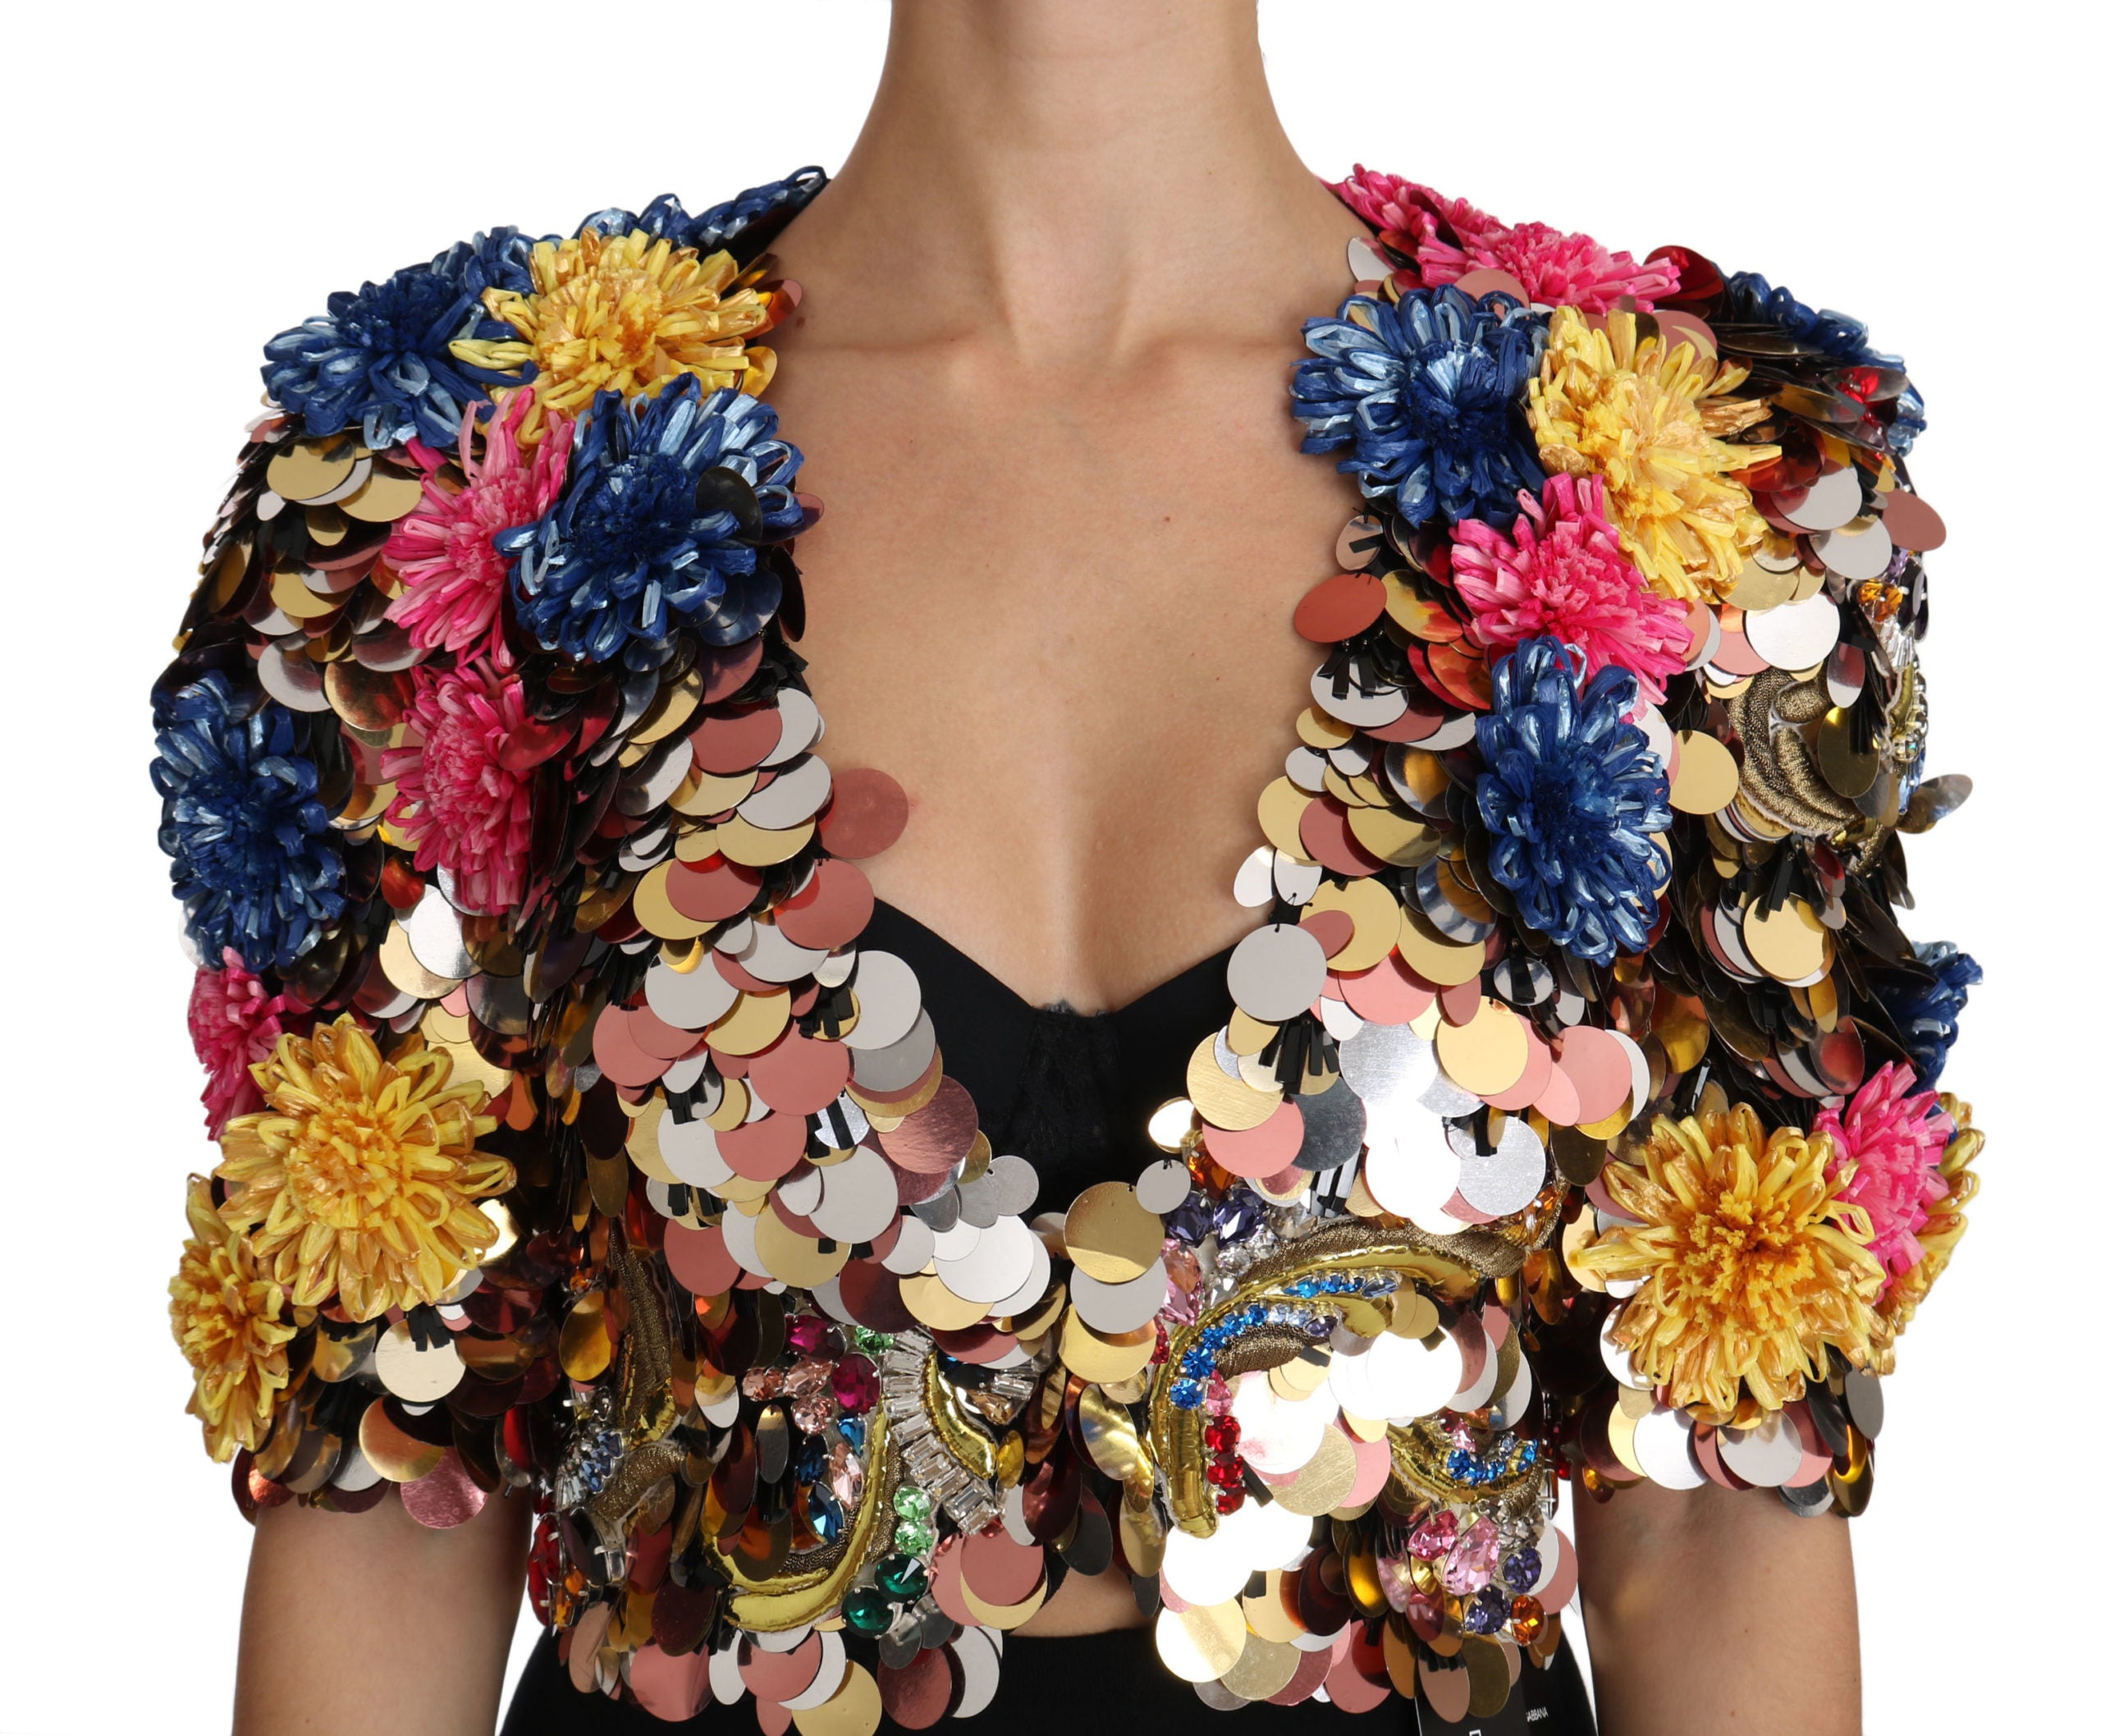 Dolce & Gabbana Crystal Sequined Floral Jacket Coat